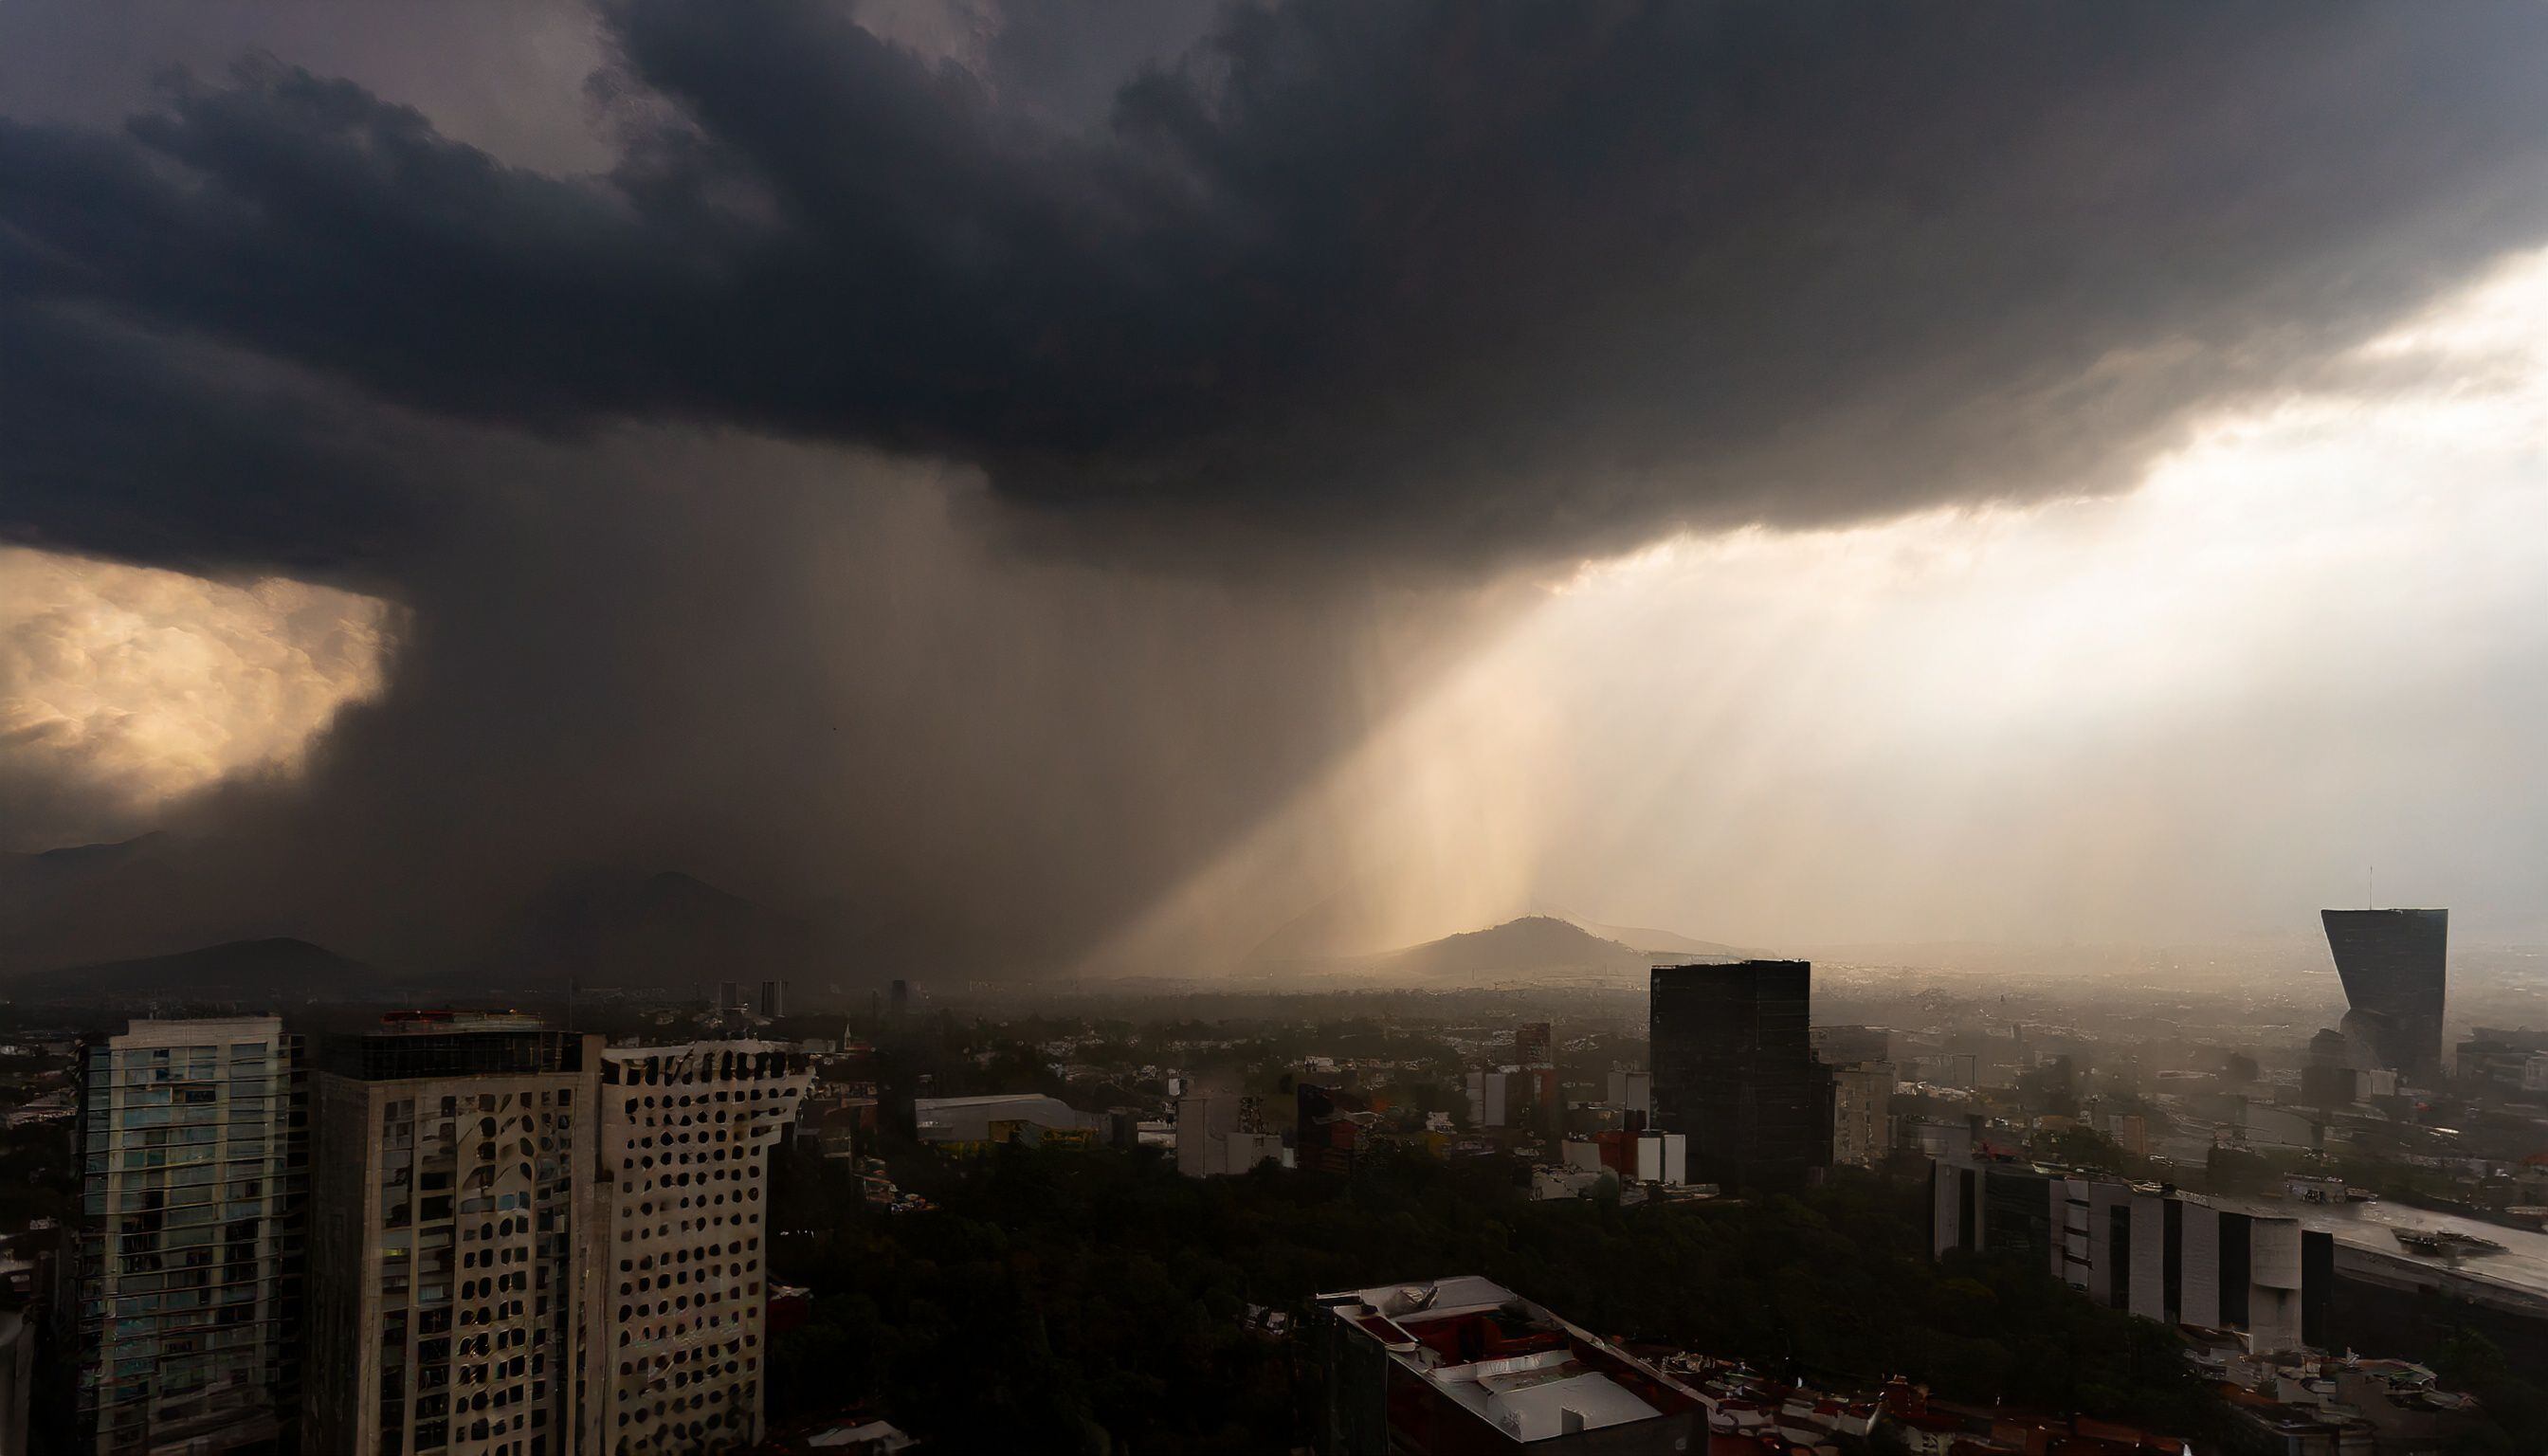 Esta imagen muestra lluvia intensa y viento furioso en México, un recordatorio de la poderosa y a veces devastadora fuerza de la naturaleza. - (Imagen ilustrativa Infobae)